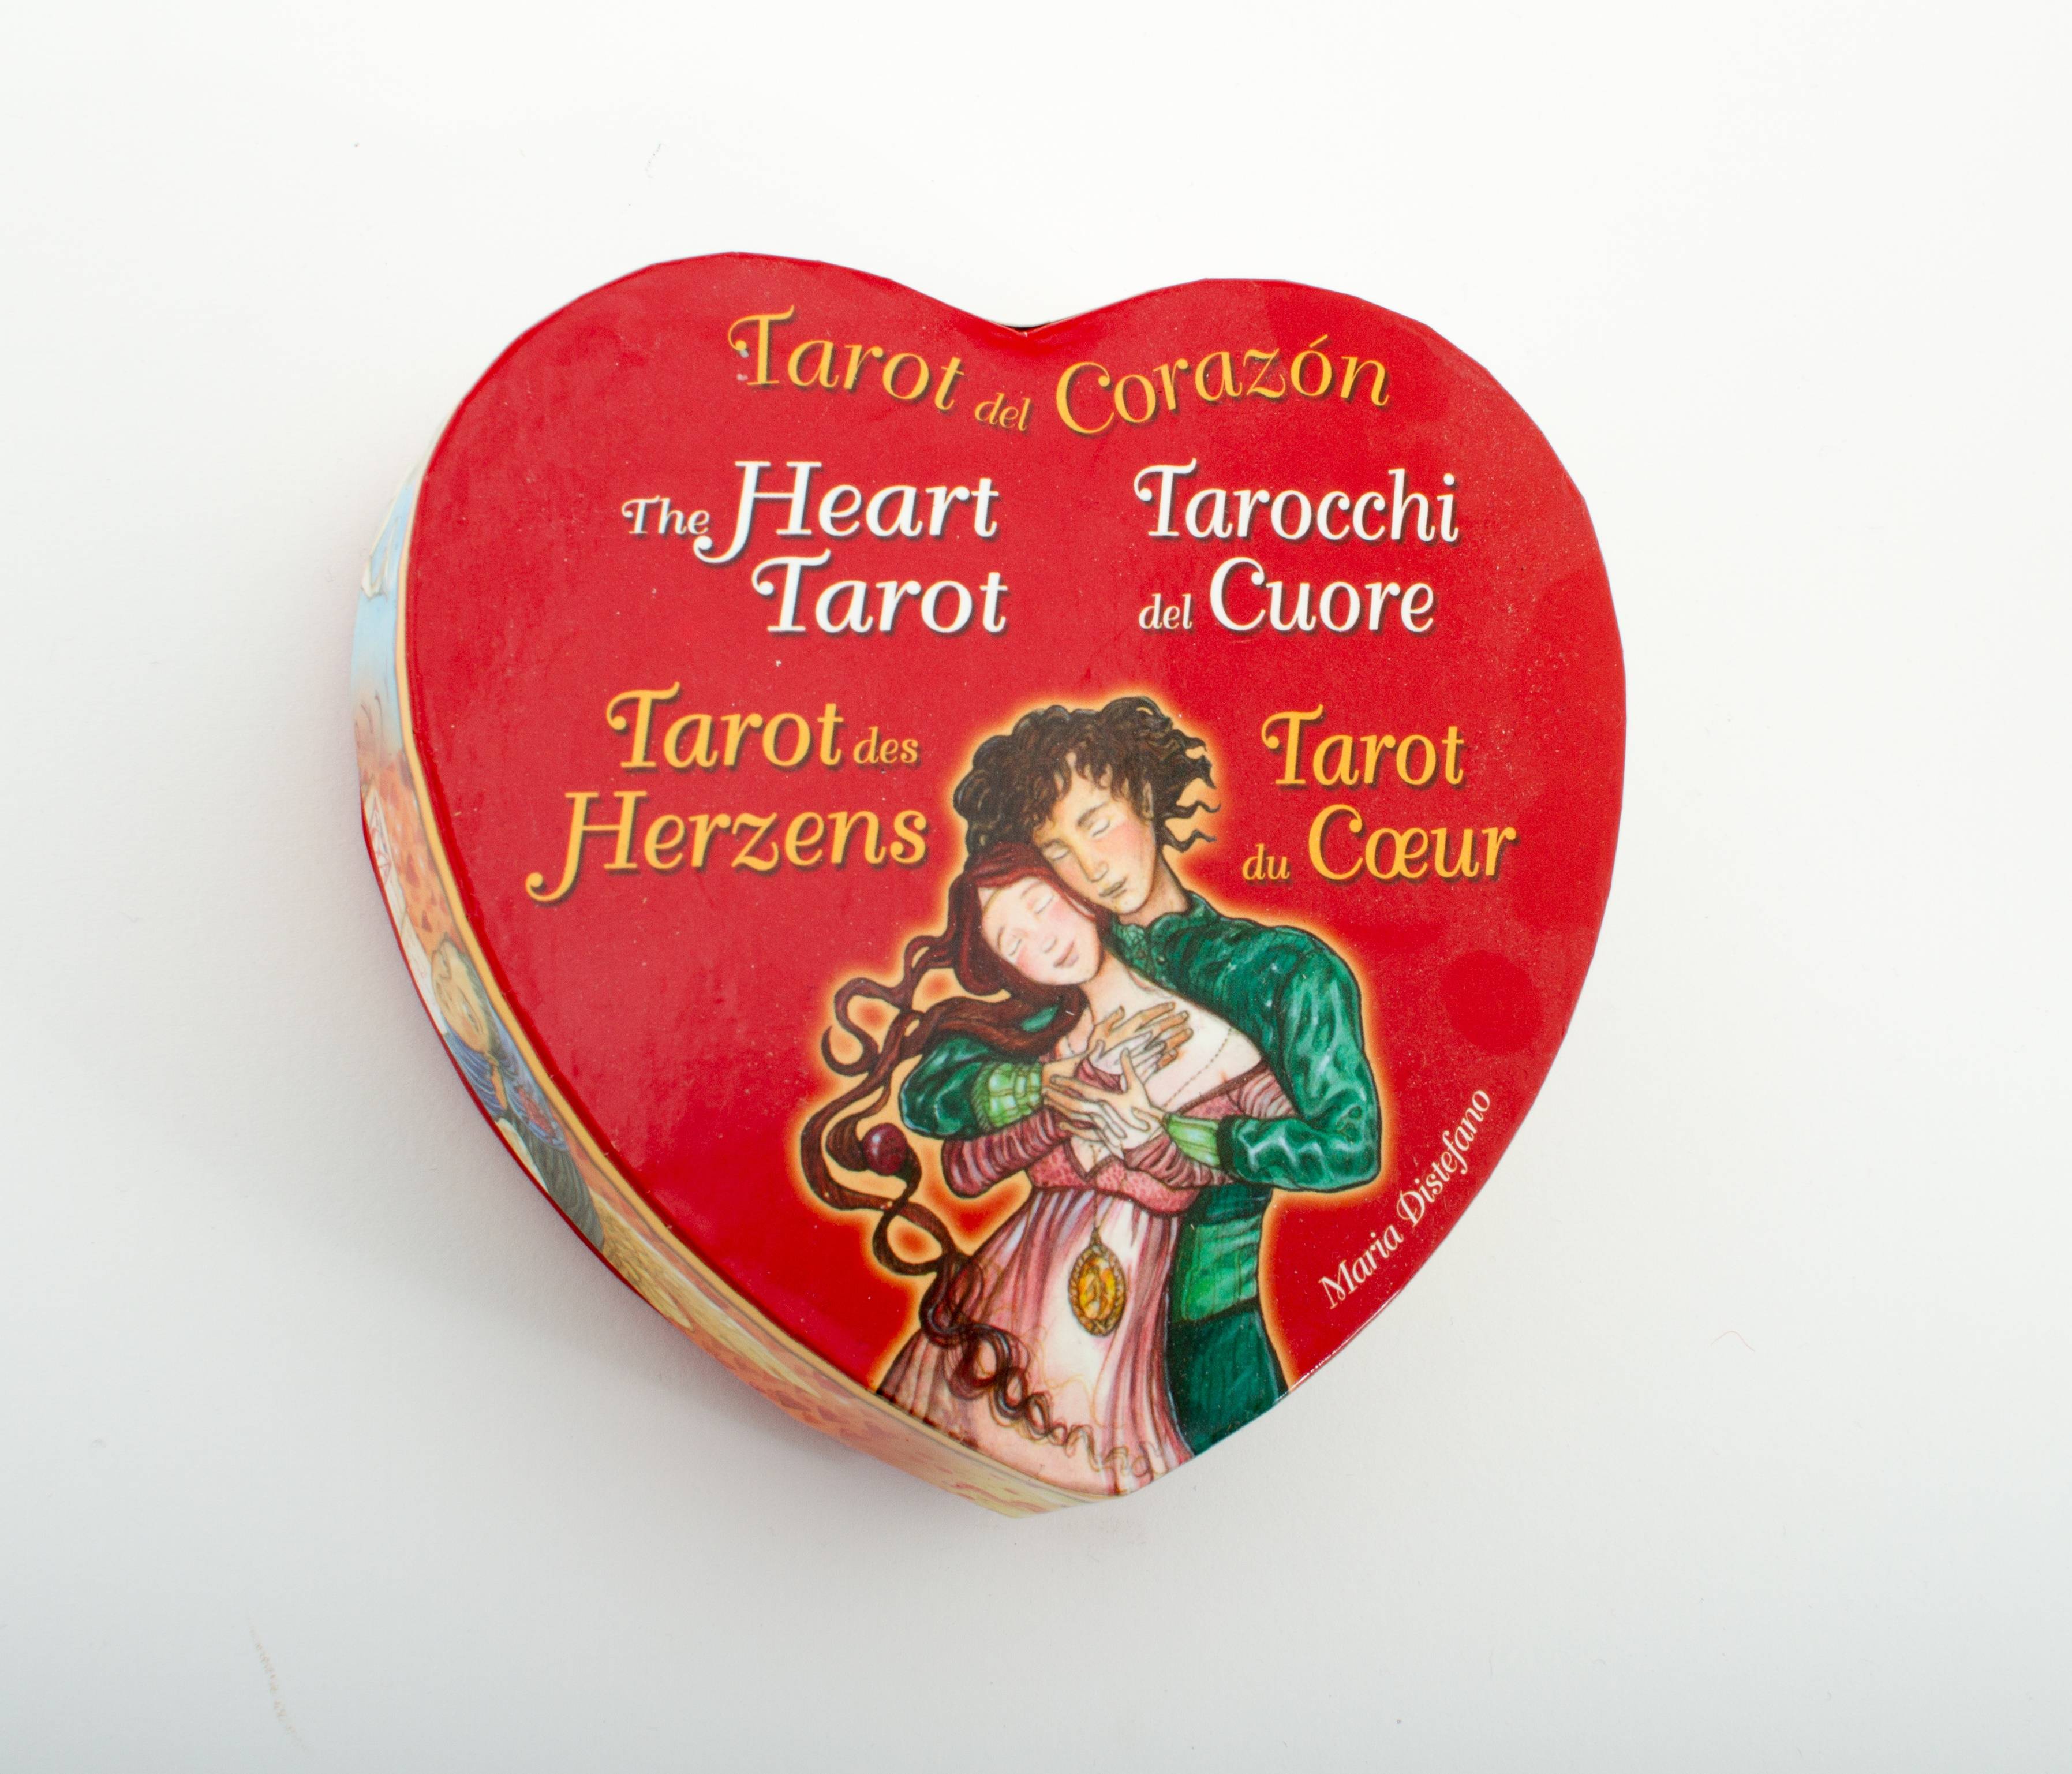 The Hearth Tarot (heart shaped tarot)